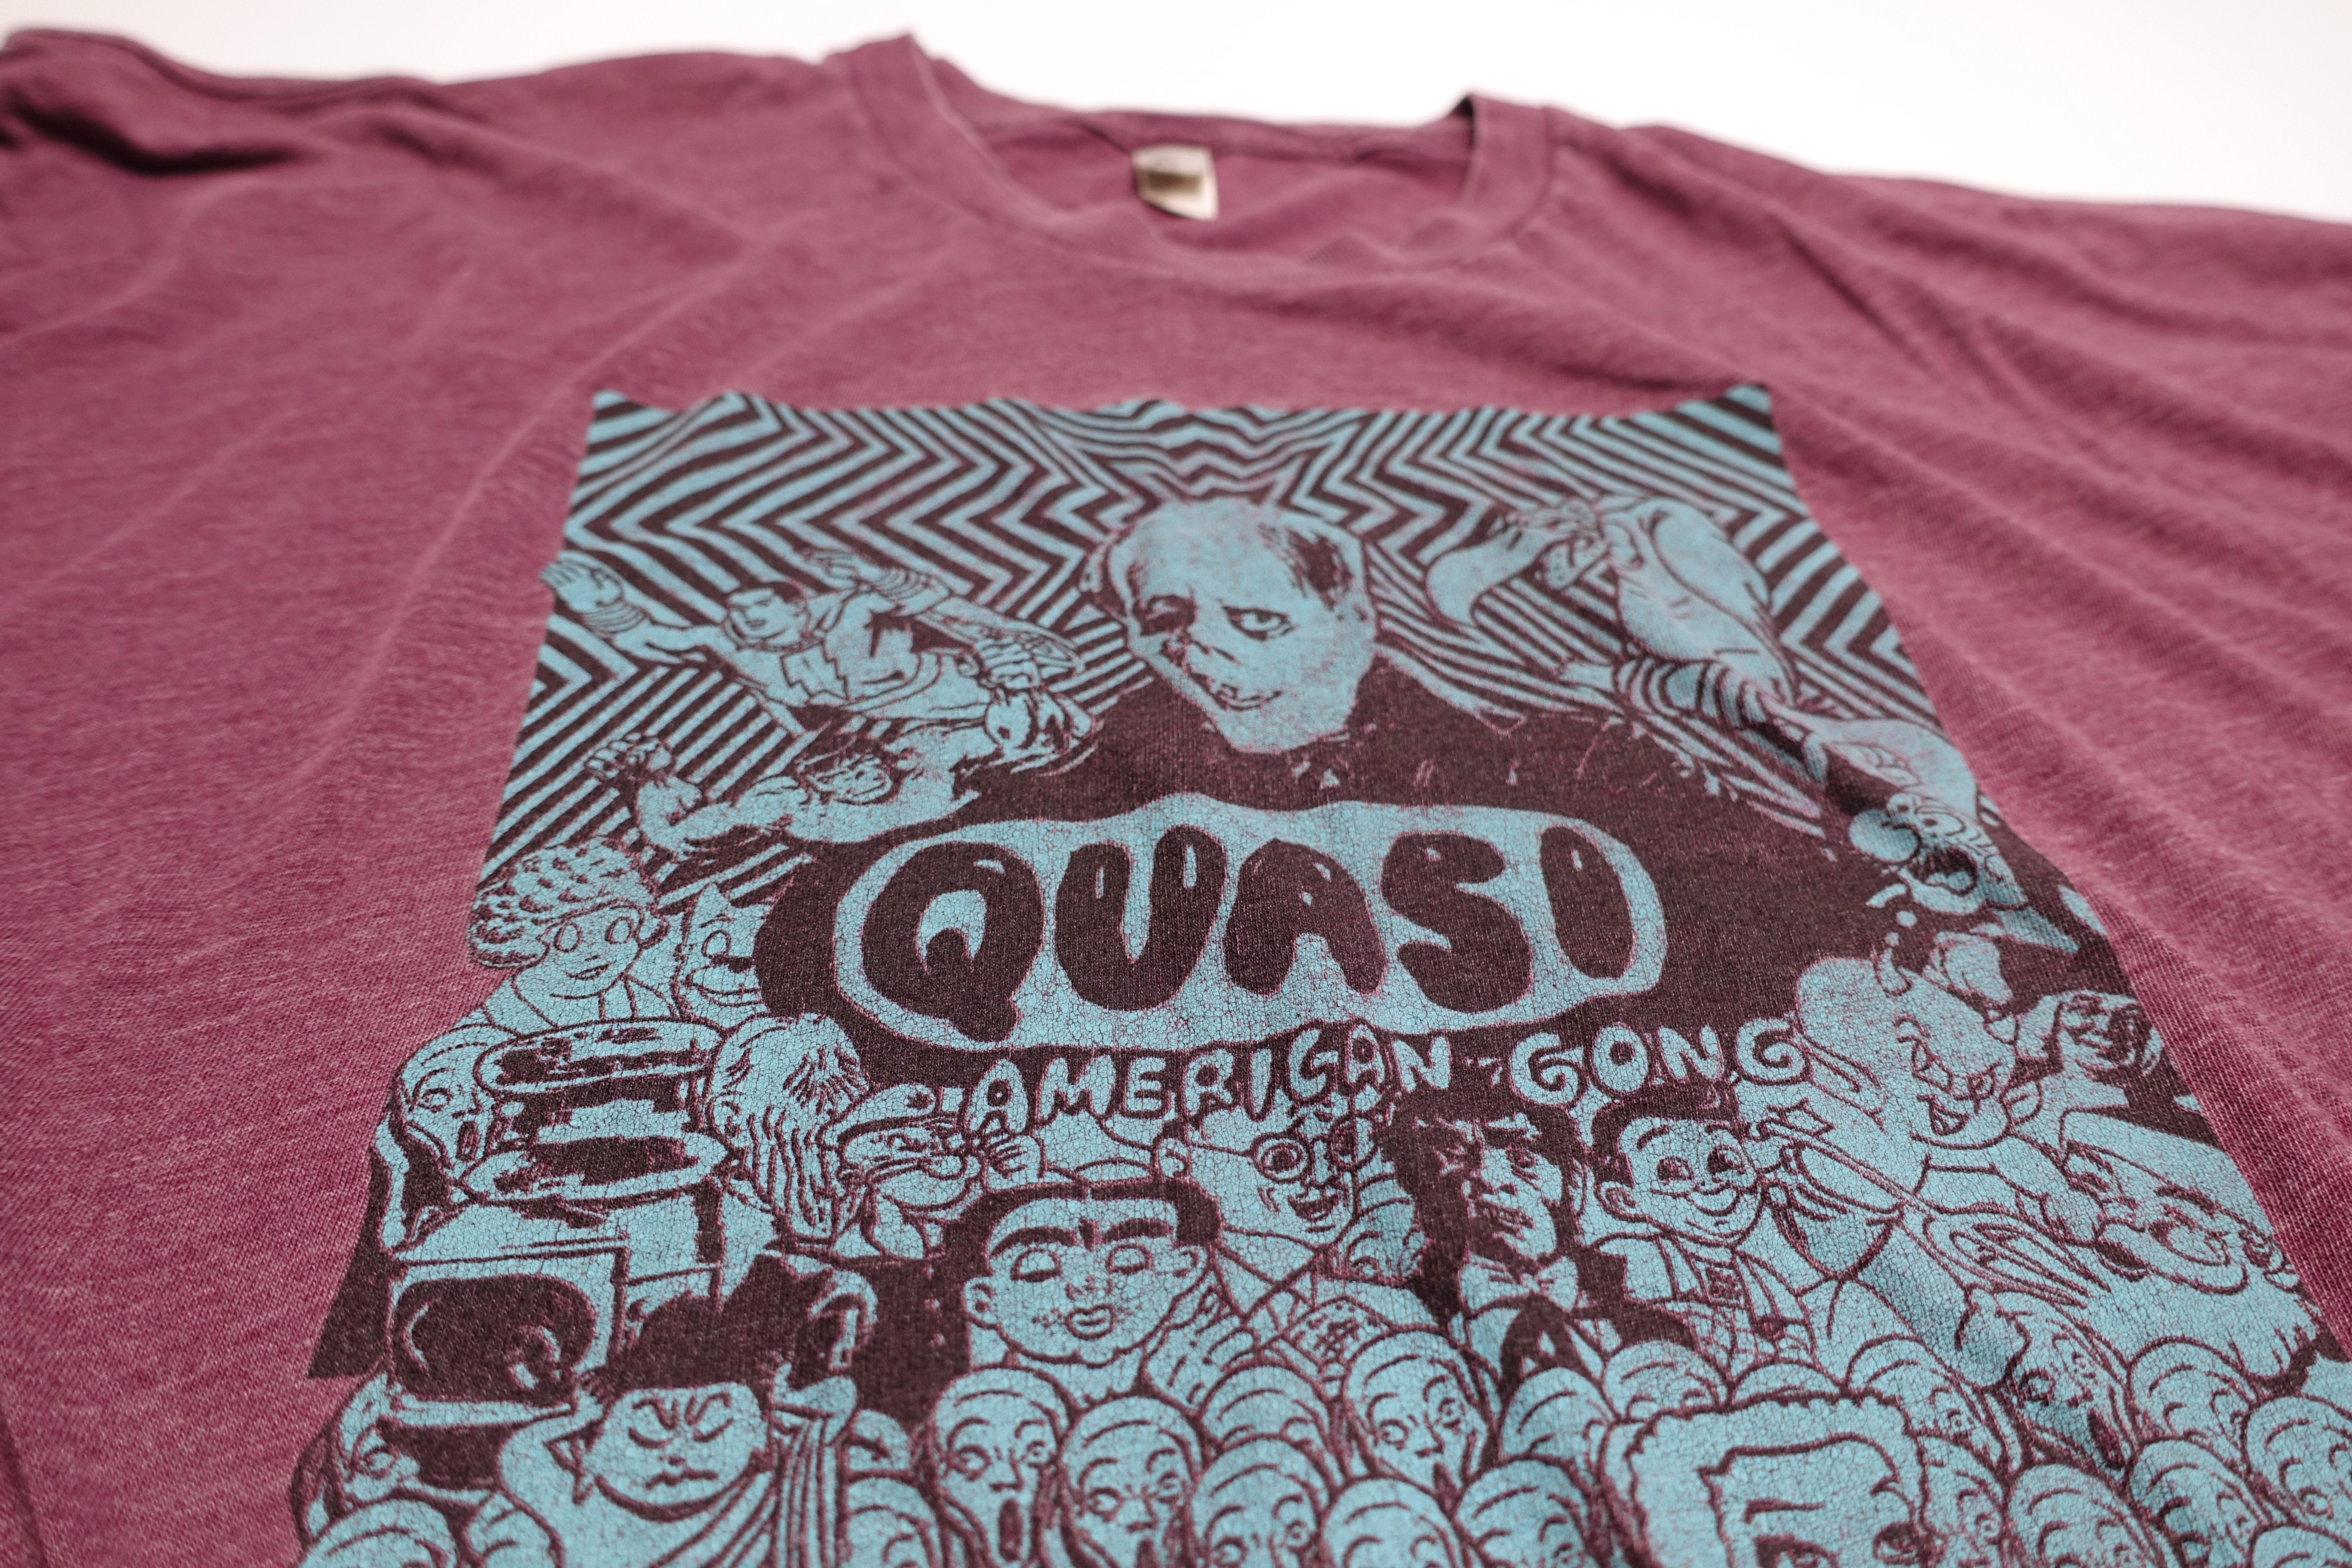 Quasi - American Gong 2010 Tour Shirt Size XL